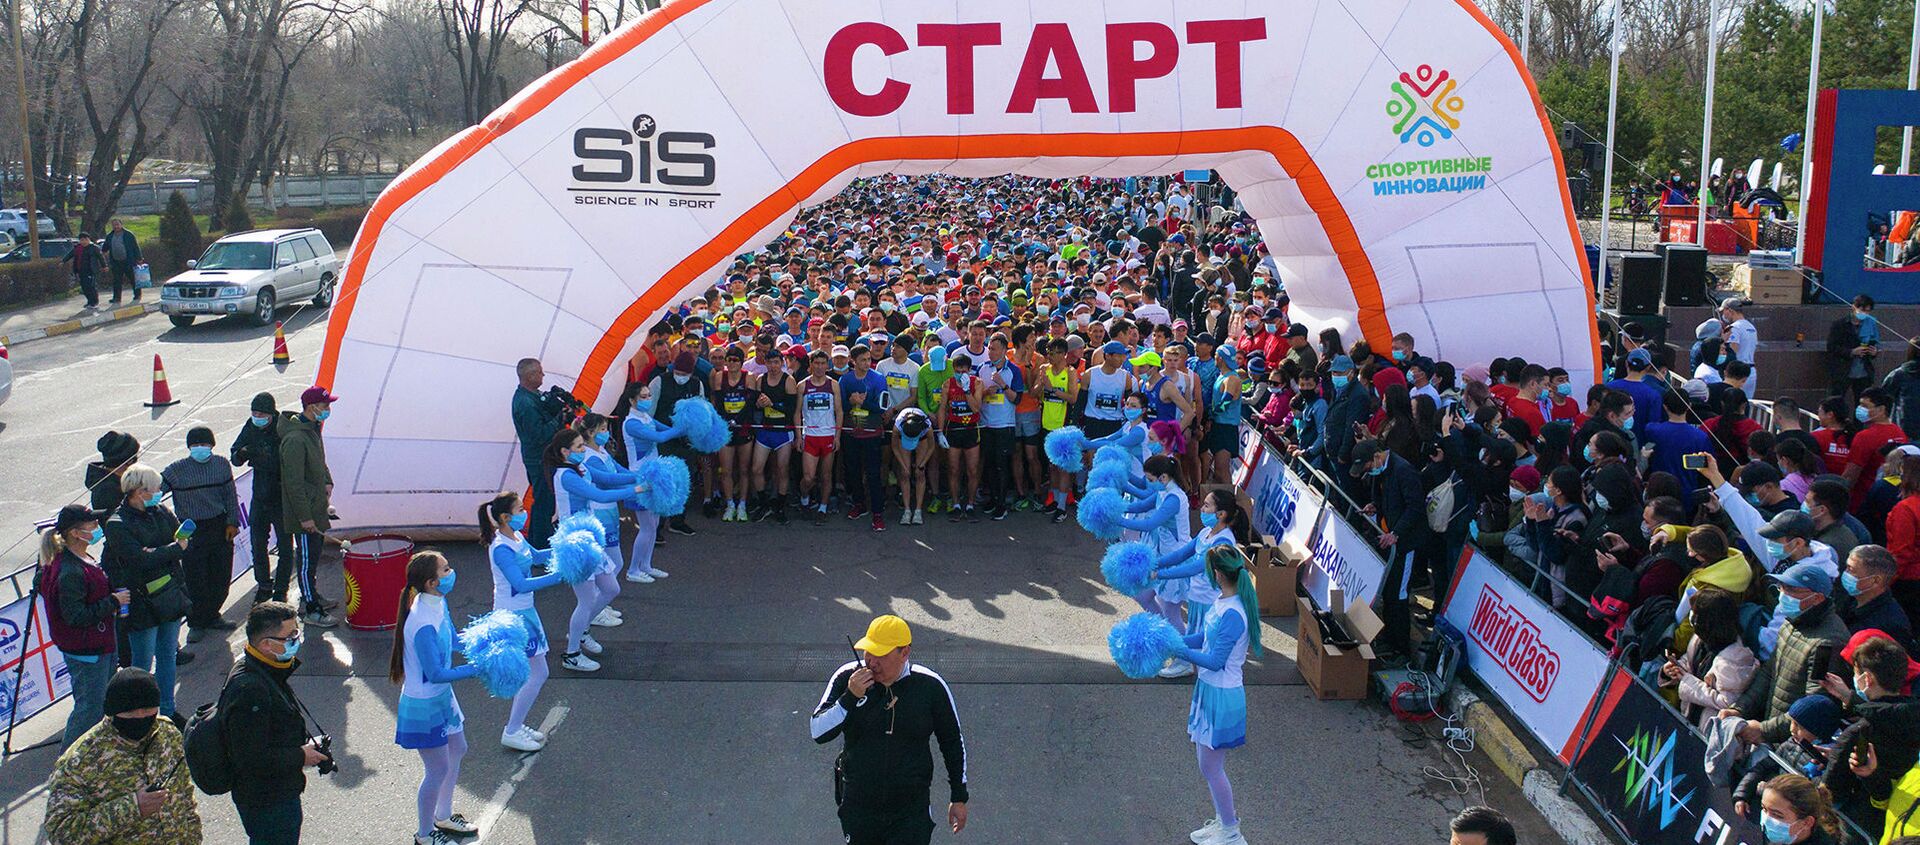 Көпкө күттүргөн жарыш. Жаз деми марафонунан видео - Sputnik Кыргызстан, 1920, 04.04.2021